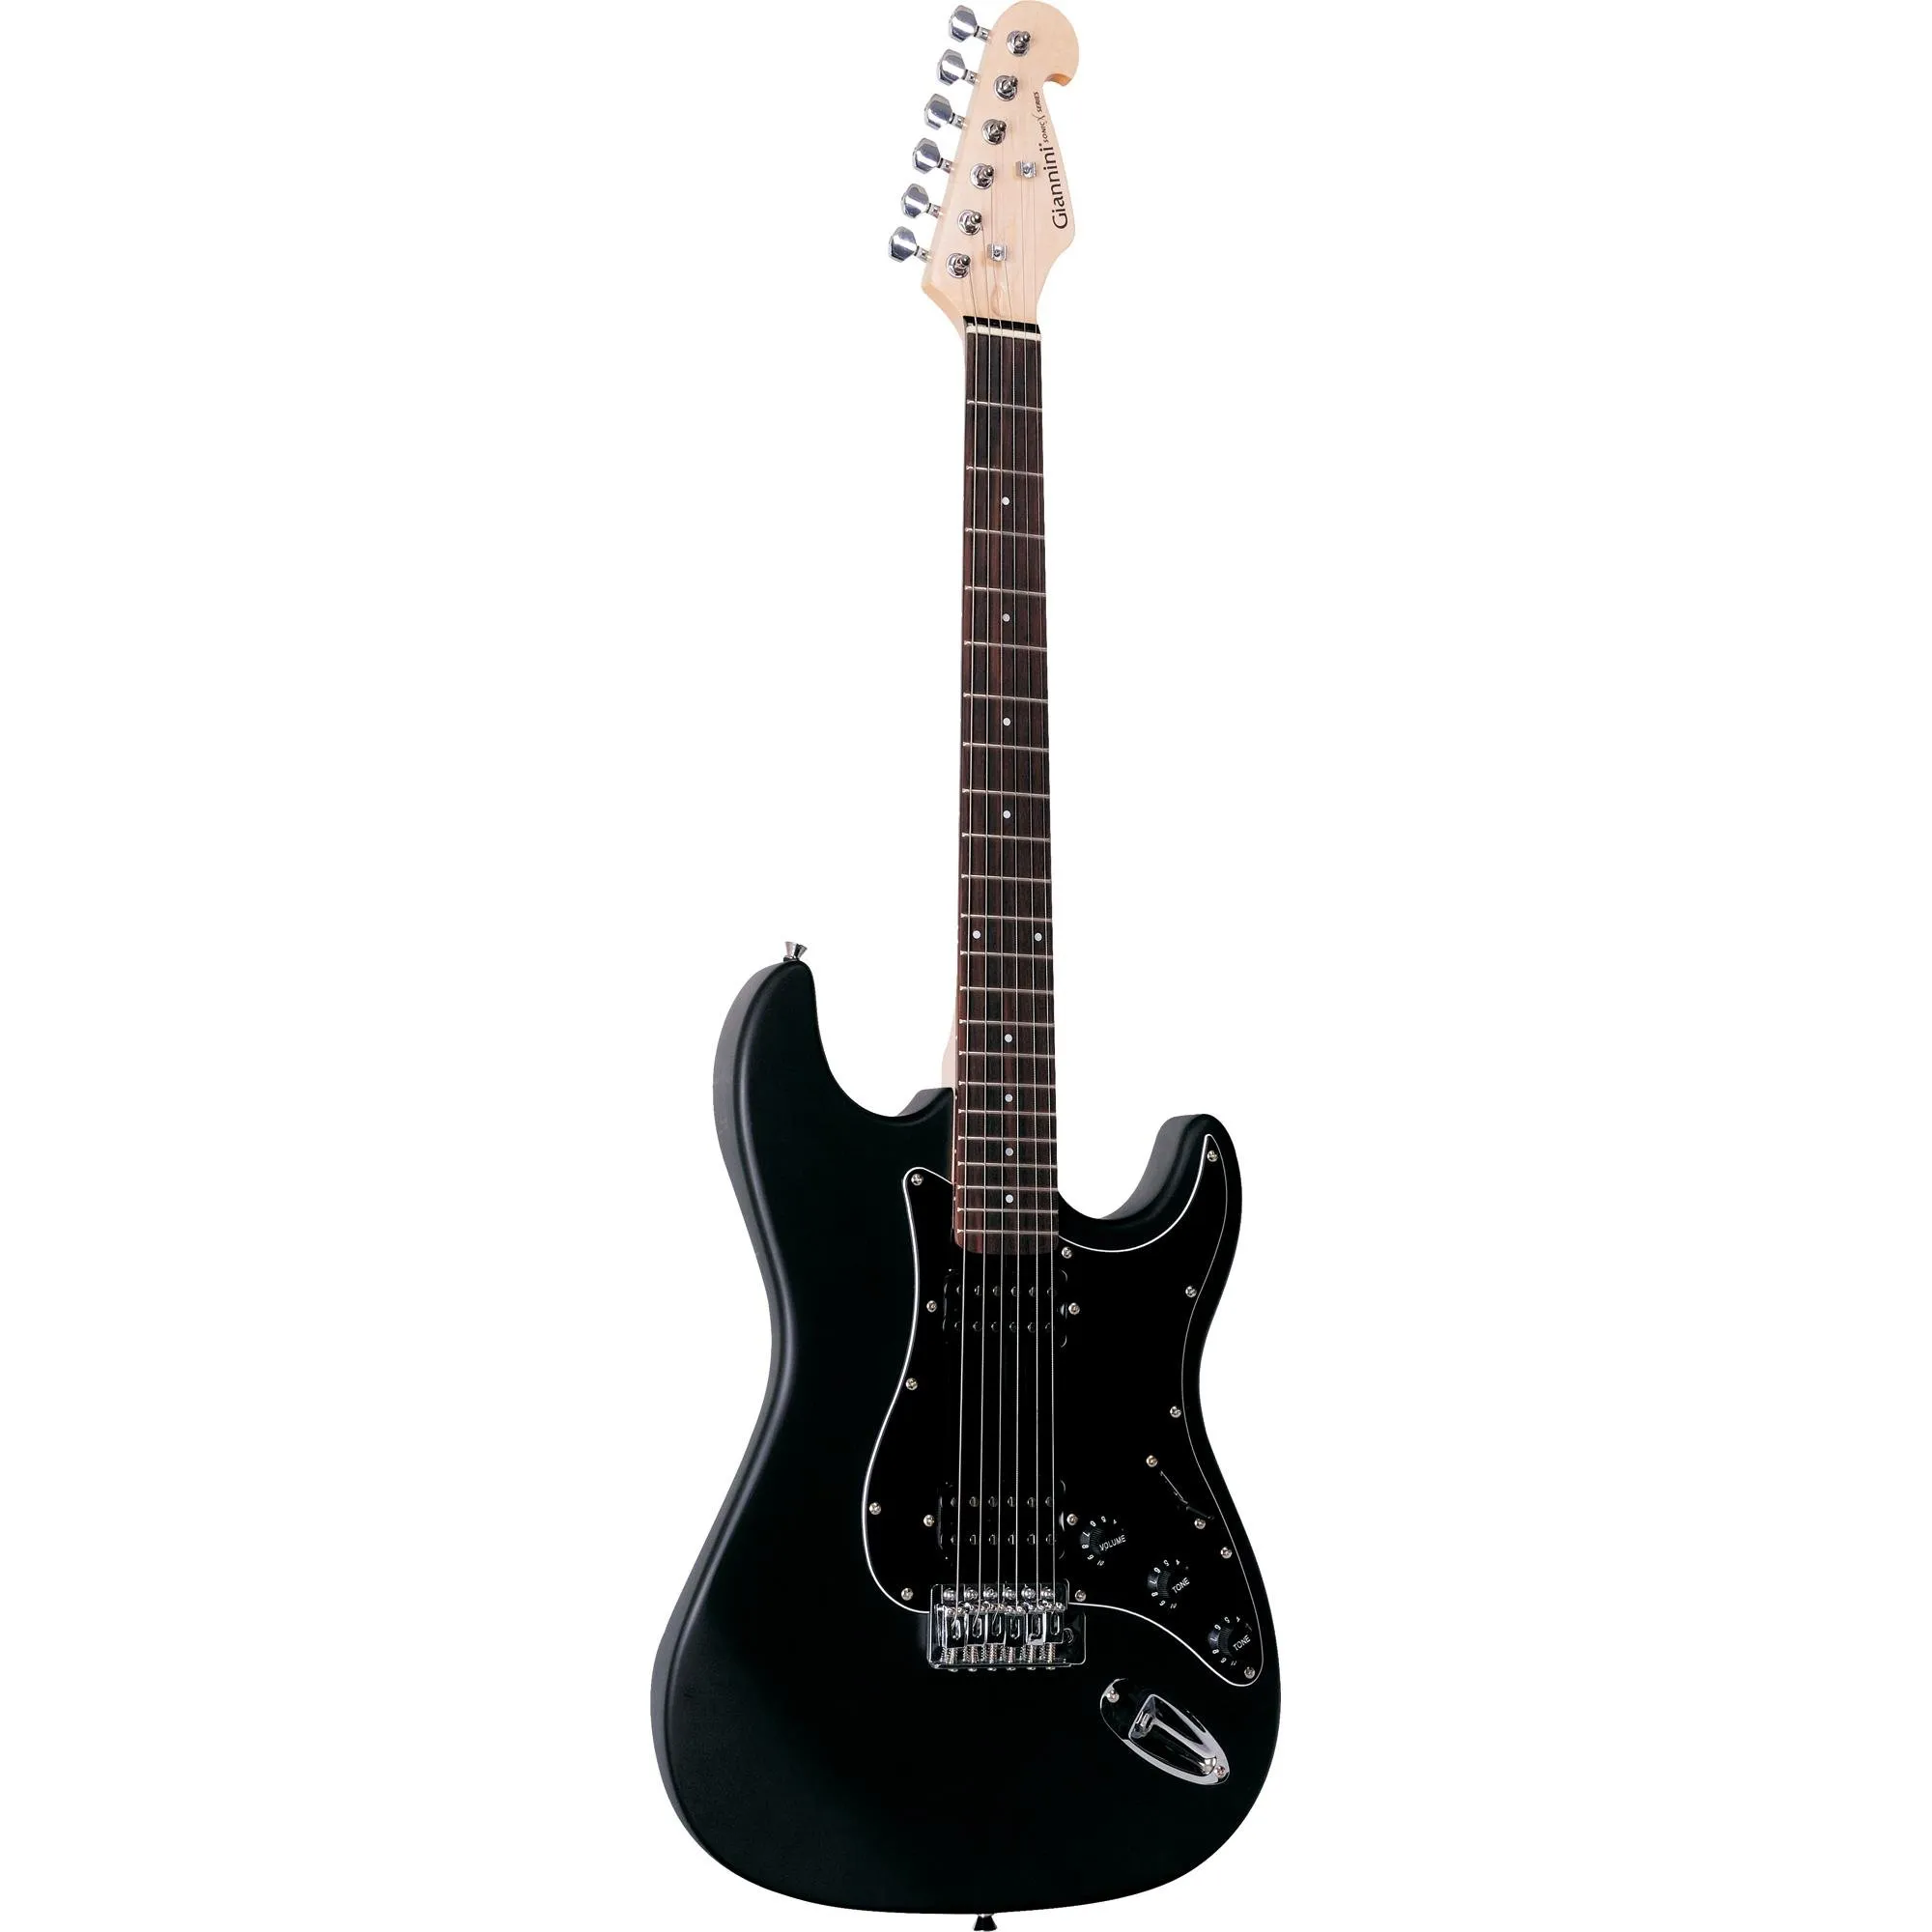 Guitarra Giannini G102 Preta Com Escudo Preto por 759,99 à vista no boleto/pix ou parcele em até 10x sem juros. Compre na loja Mundomax!